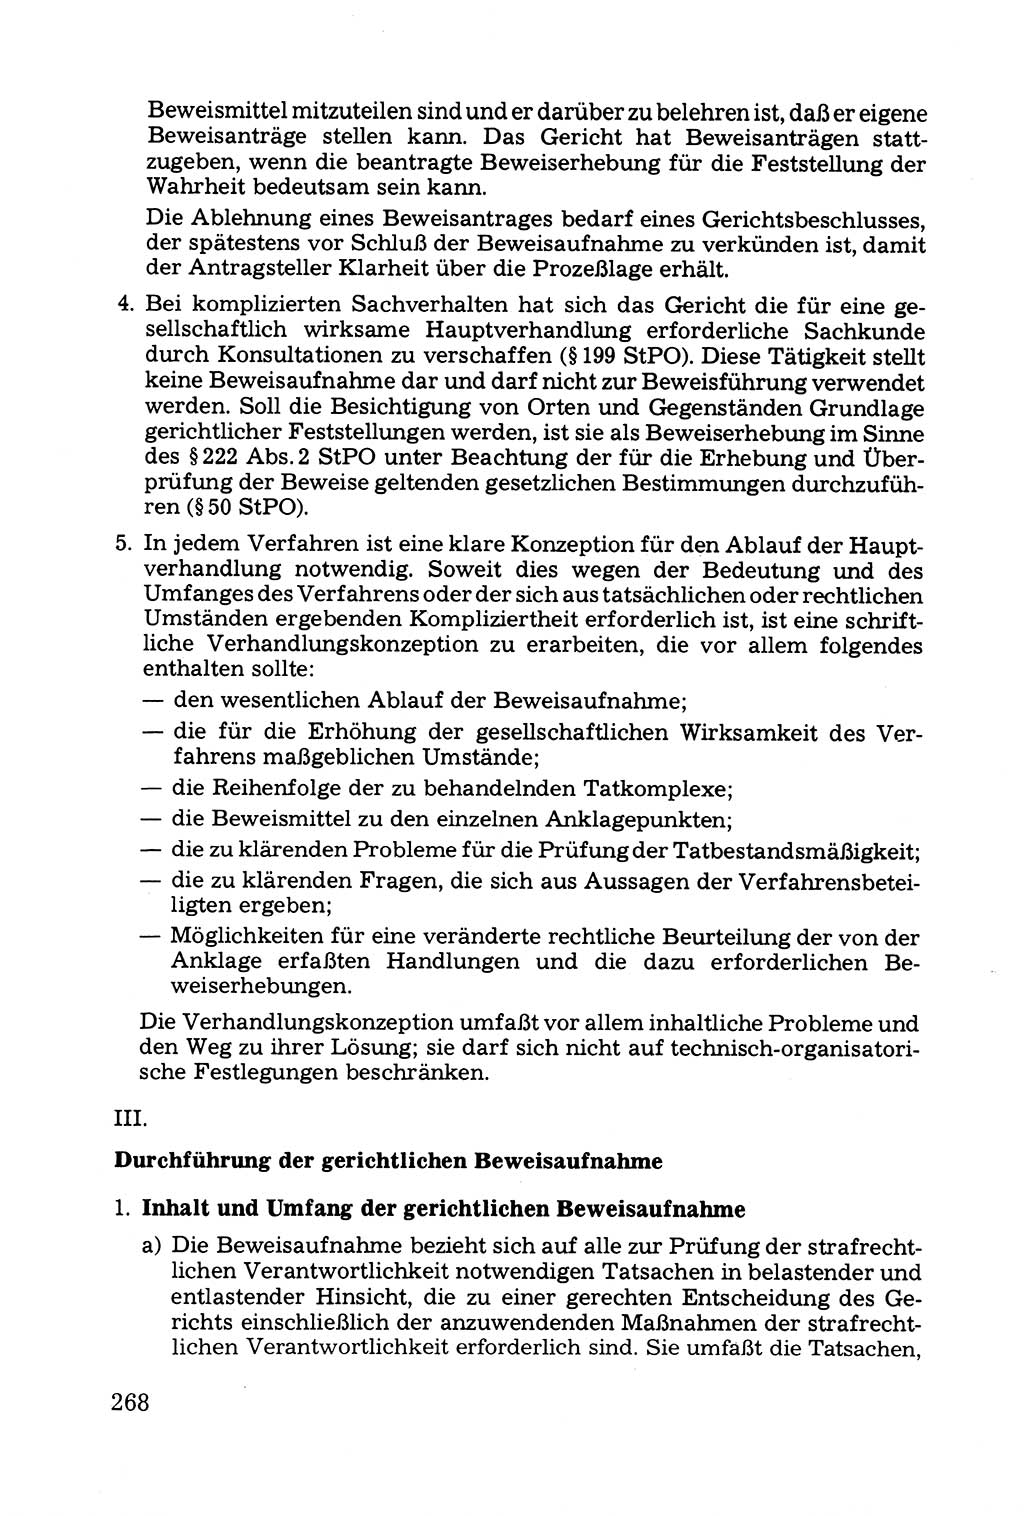 Grundfragen der Beweisführung im Ermittlungsverfahren [Deutsche Demokratische Republik (DDR)] 1980, Seite 268 (Bws.-Fhrg. EV DDR 1980, S. 268)